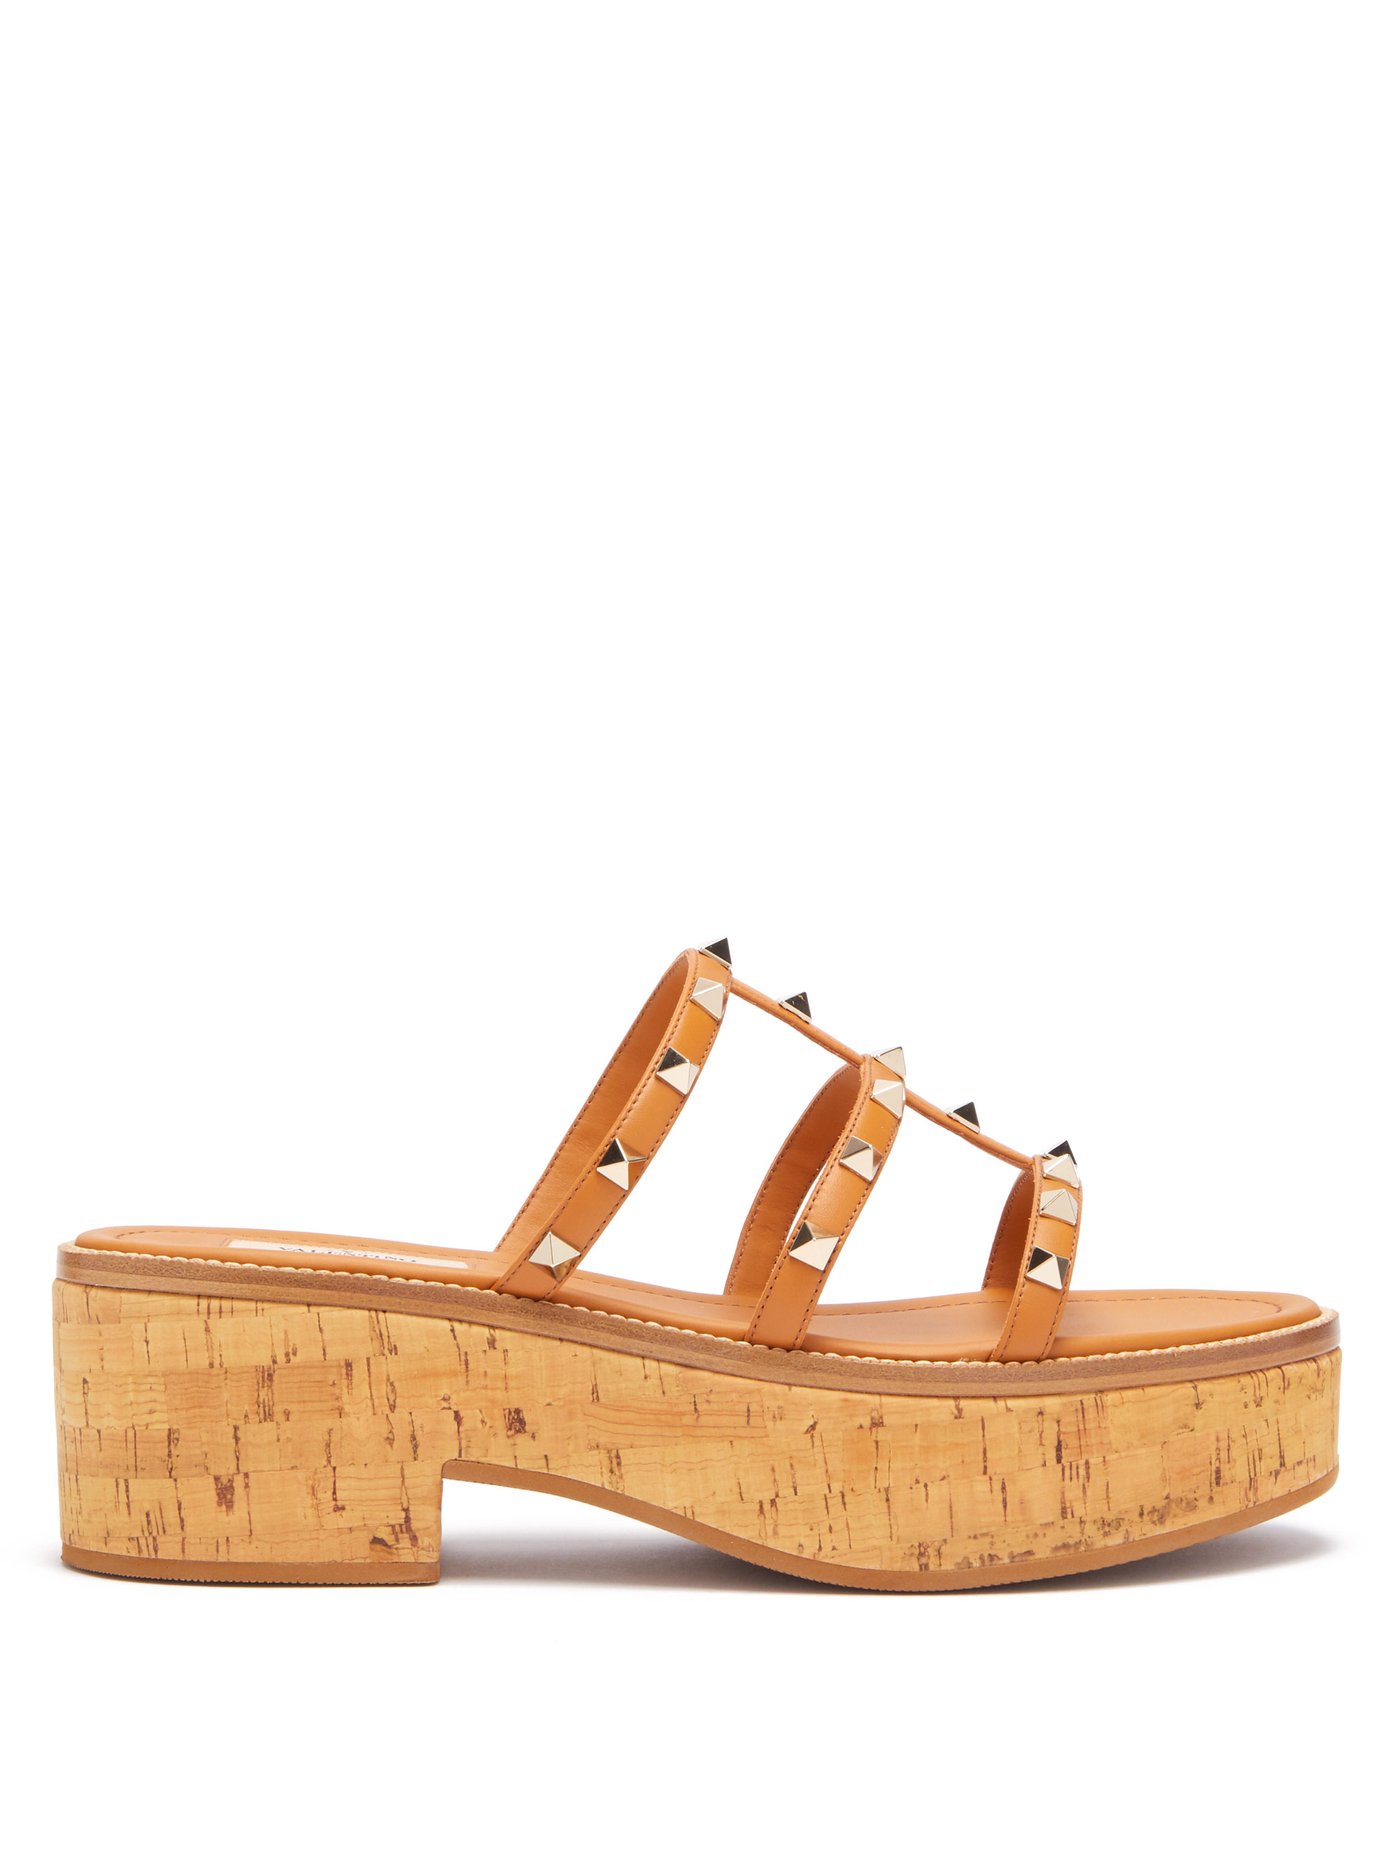 cork bottom platform sandals